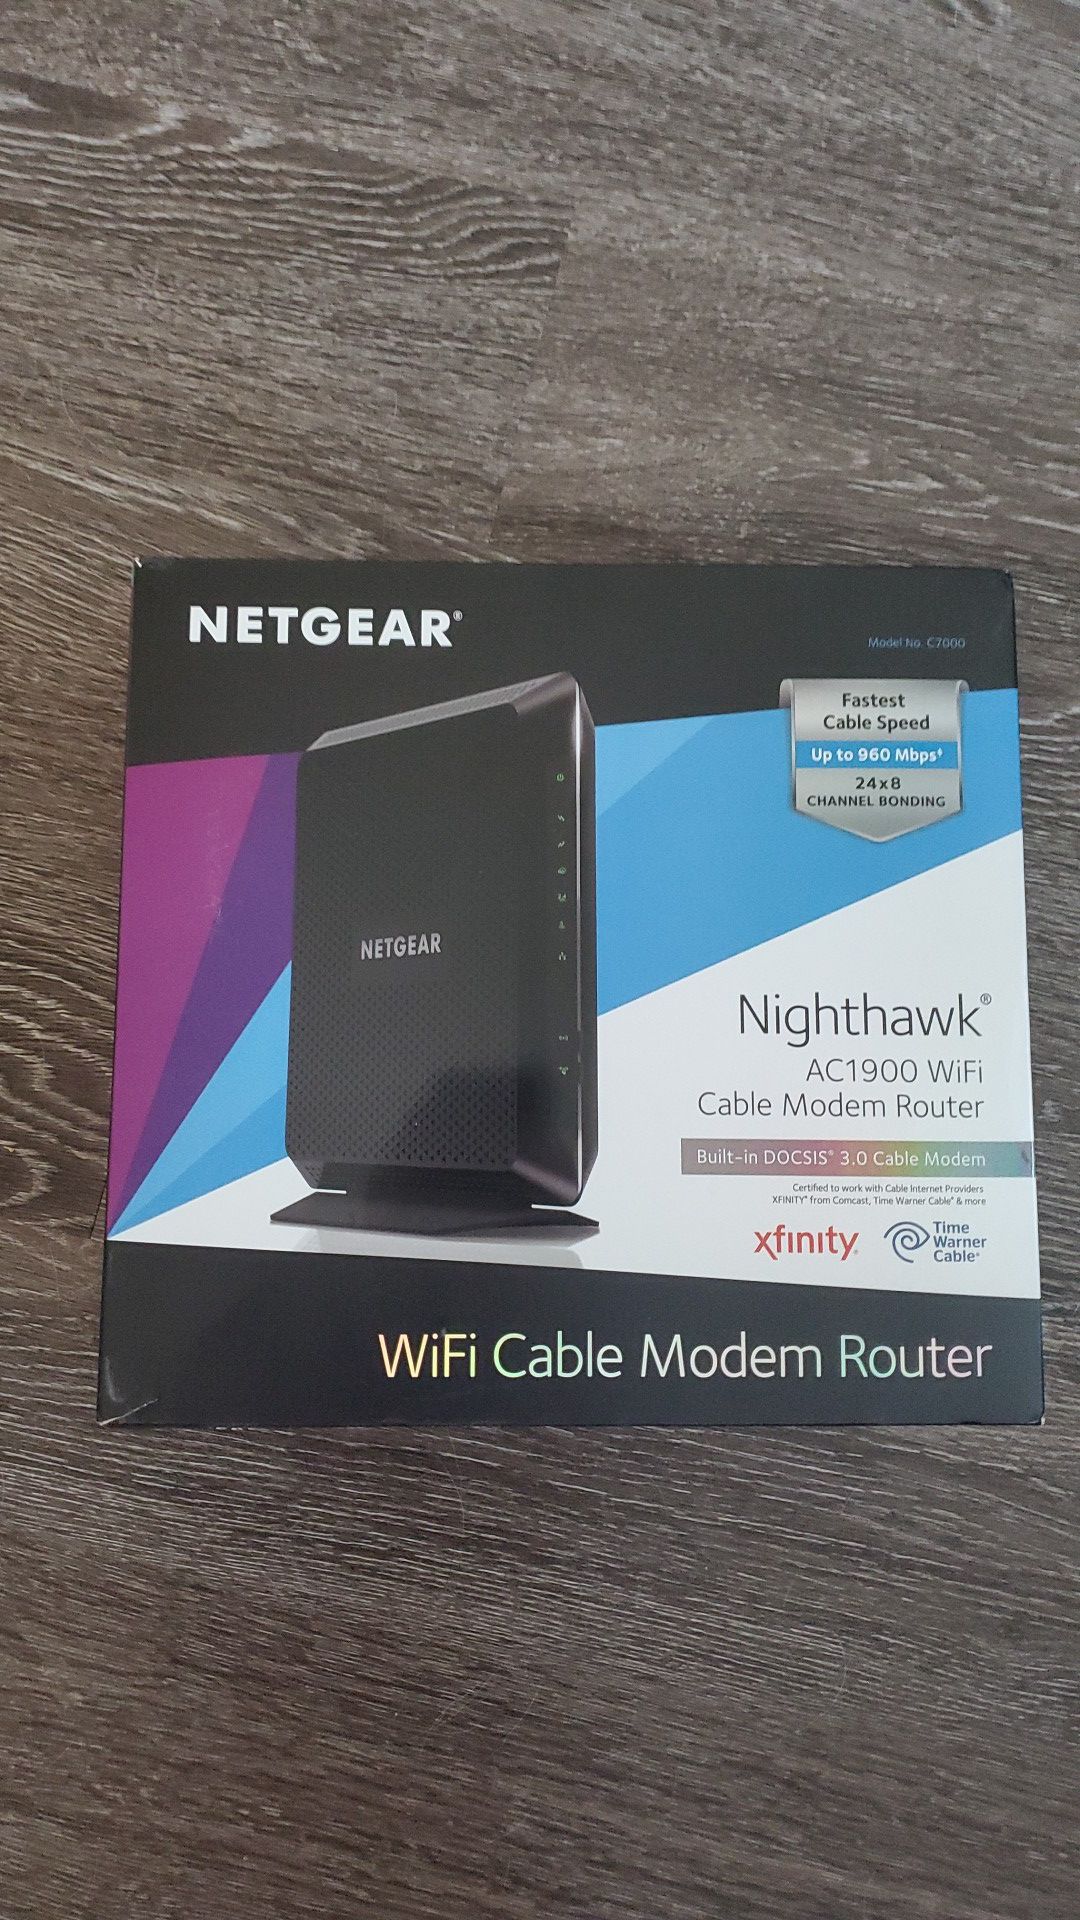 Netgear Nighthawk Router and Modem